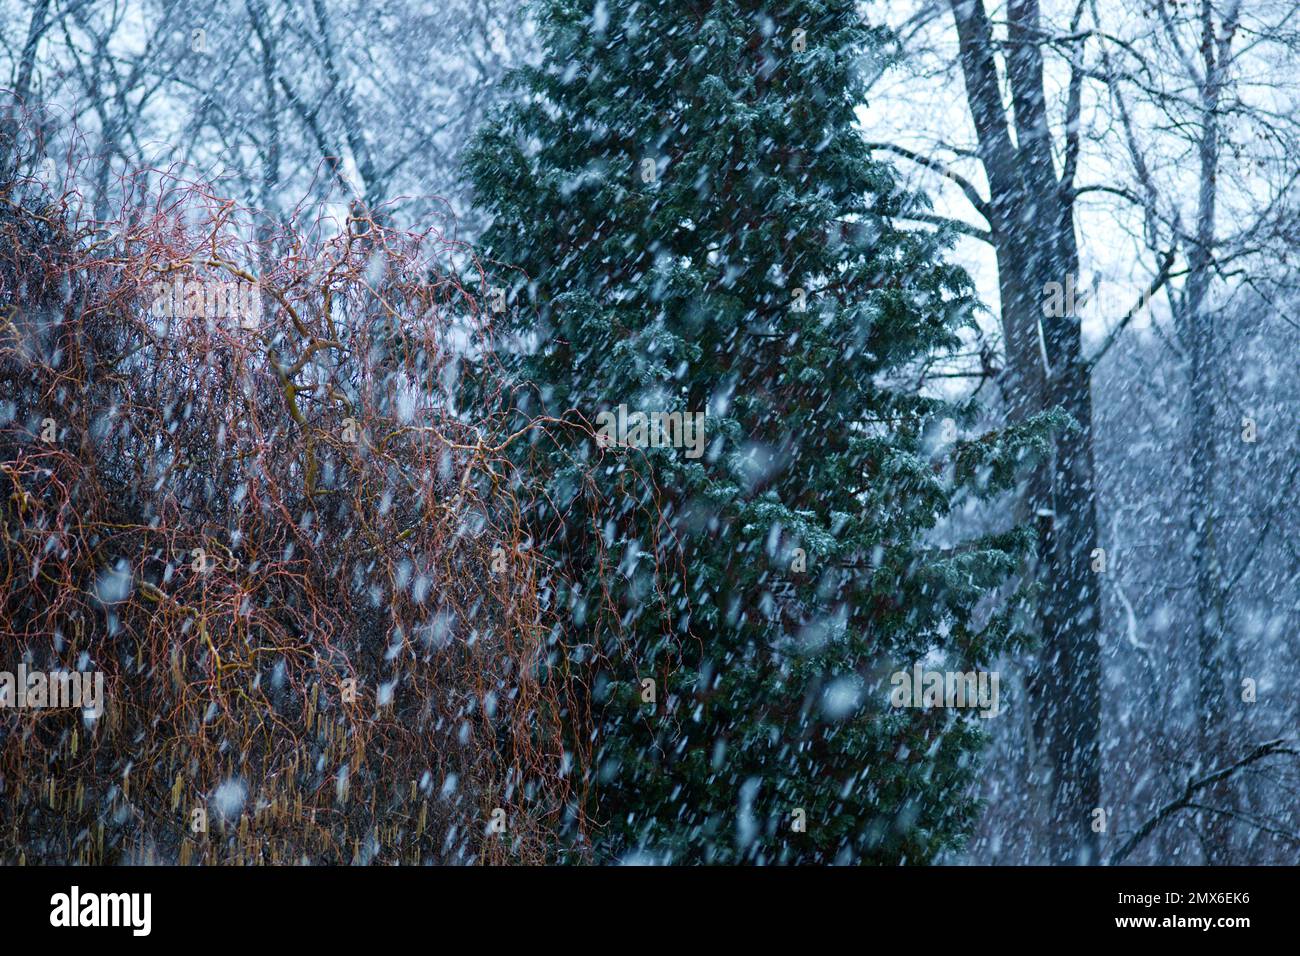 Schneeflocke mit herabfallenden Schneeflocken im Vordergrund und einem Hintergrund von mehreren Bäumen in verschiedenen Farben (braune Weide, grüner Nadelbaum, schwarze Buche) Stockfoto